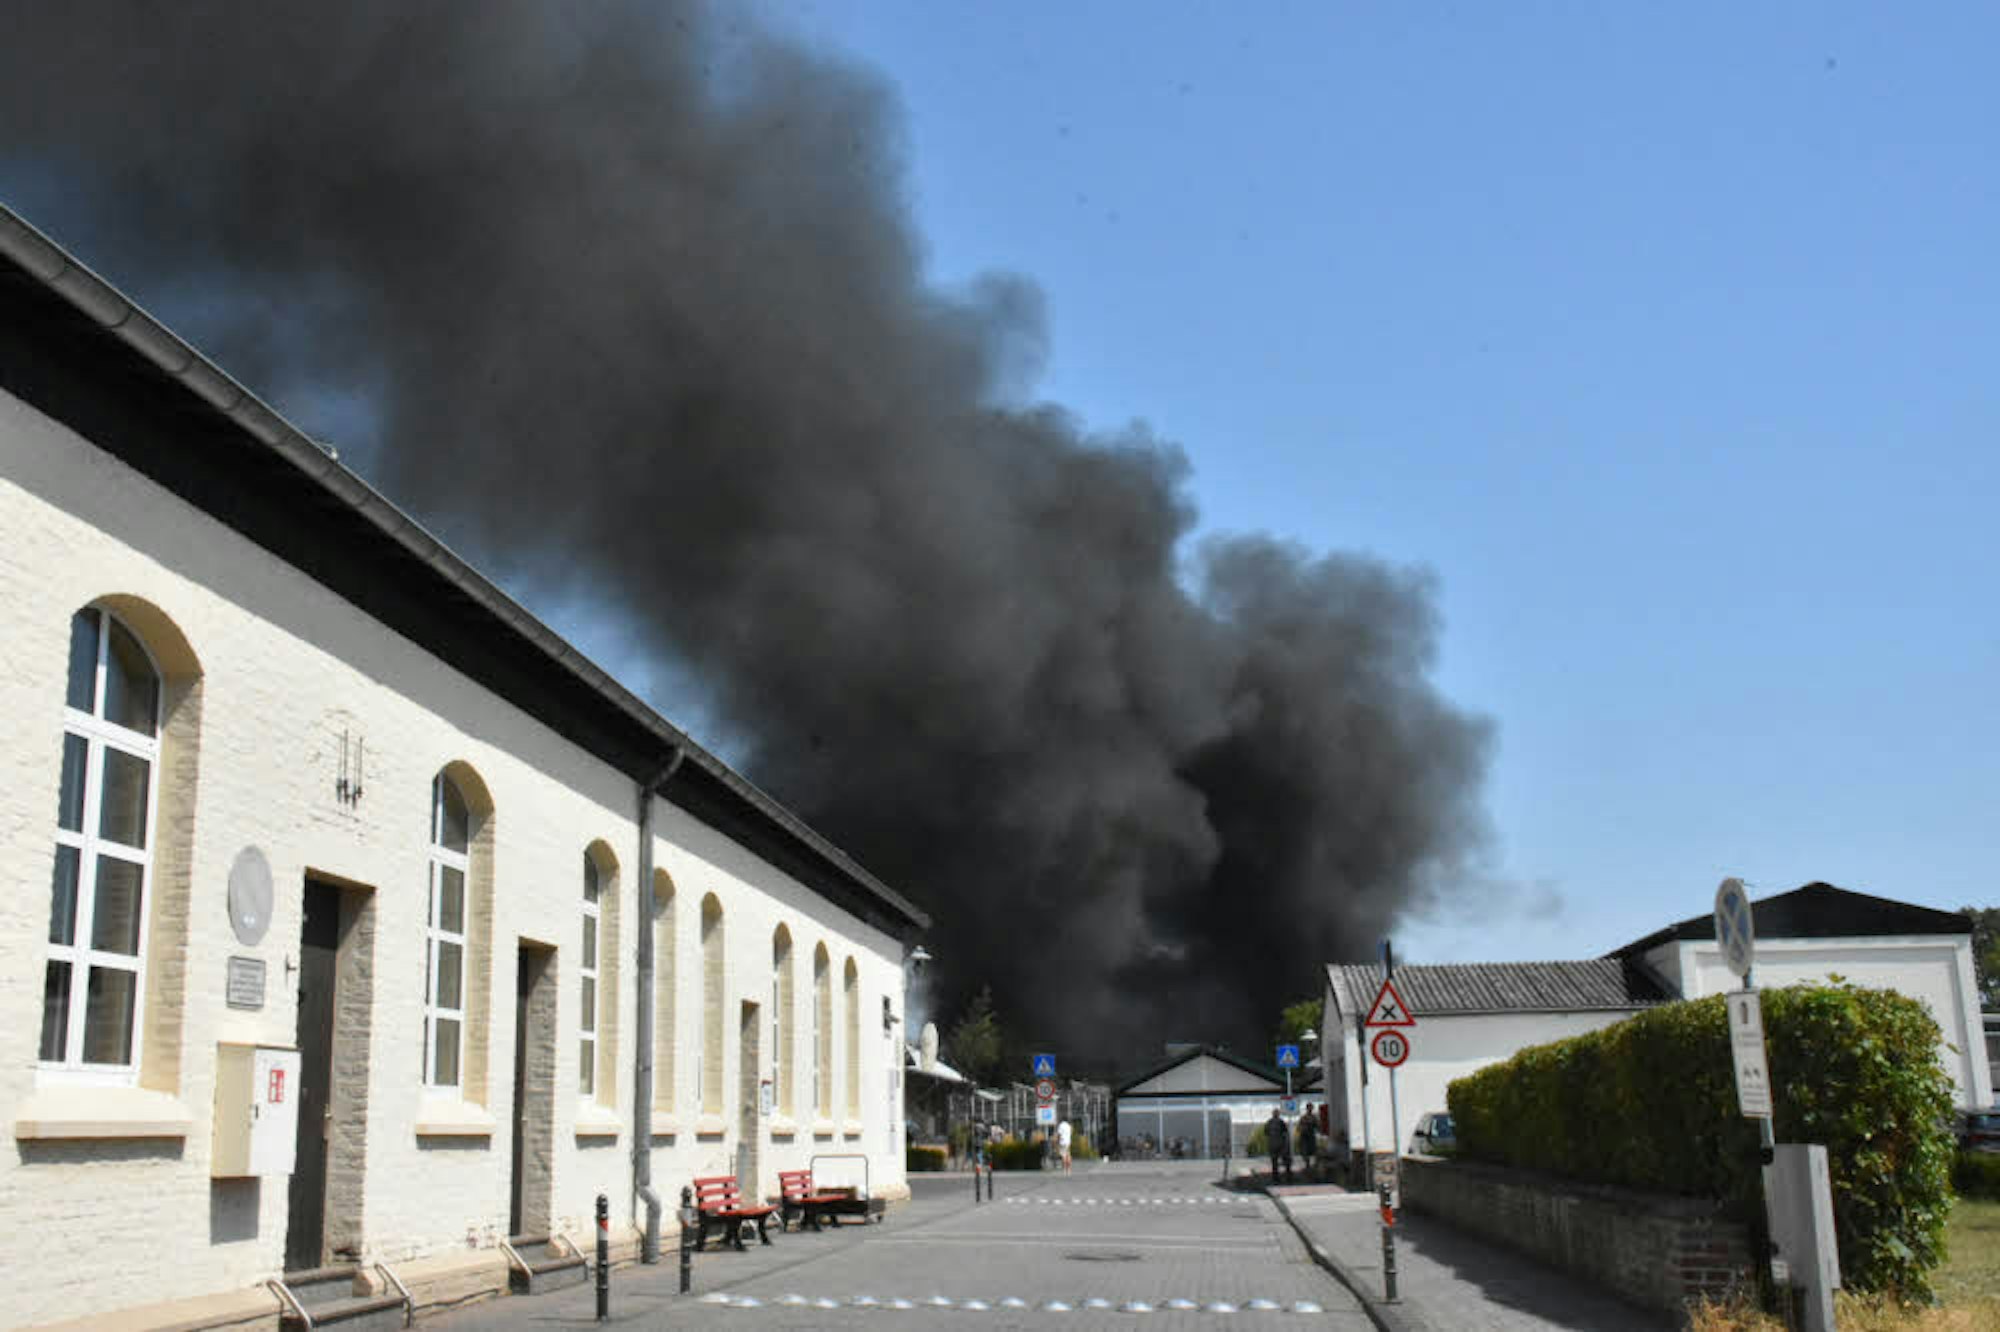 Der Brand wurde massiv mit Wasser bekämpft, auch ein Löschfahrzeug der Flughafenfeuerwehr kam zum Einsatz.